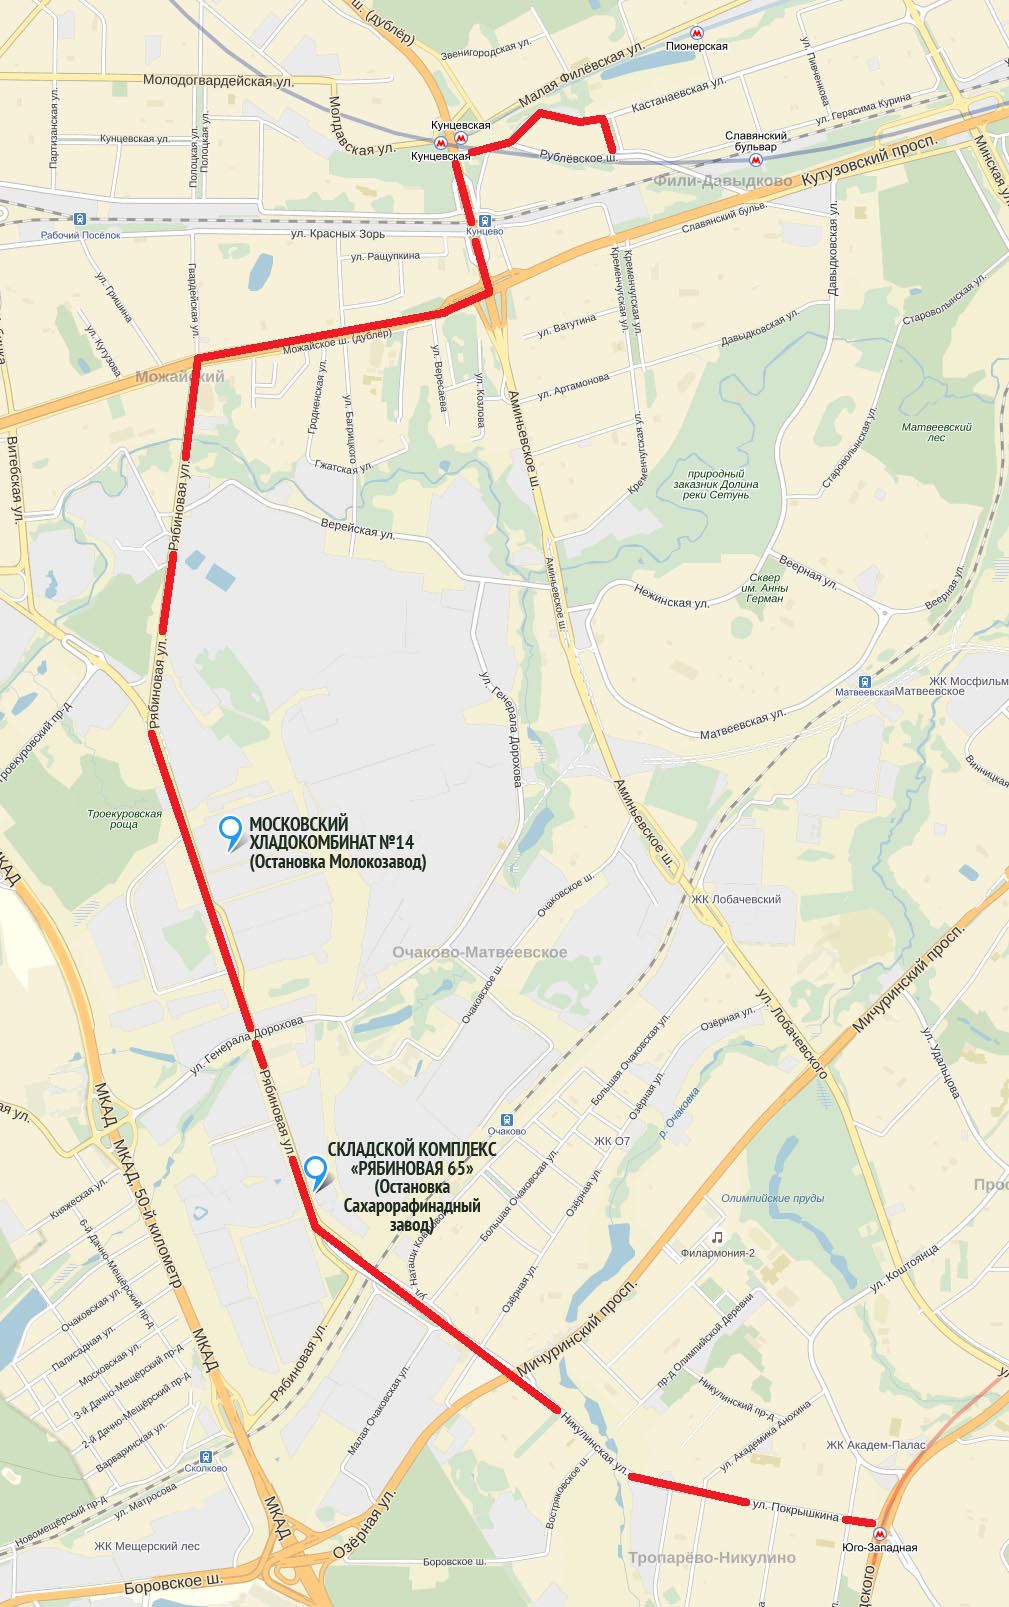 На карте показан проезд 610 маршрута автобуса от метро «Юго-западная» до Рябиновой улицы через Эстакаду.